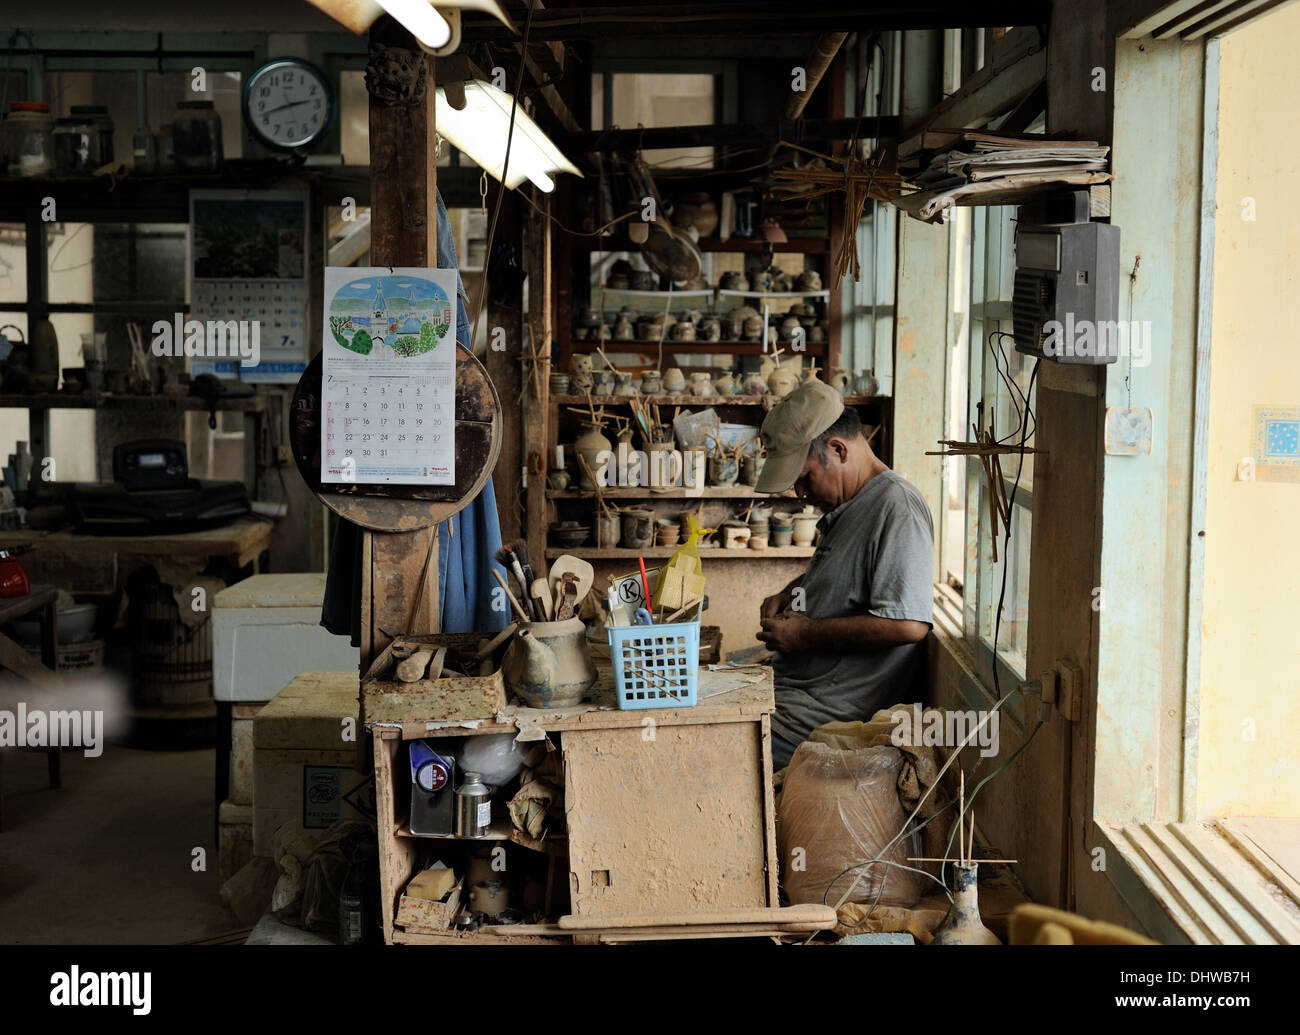 Ein Fotowalk im Töpferdorf Tsuboya offenbarte einen Handwerker, der hart an der Arbeit war. Gelegen in Naha City, Okinawa. Stockfoto